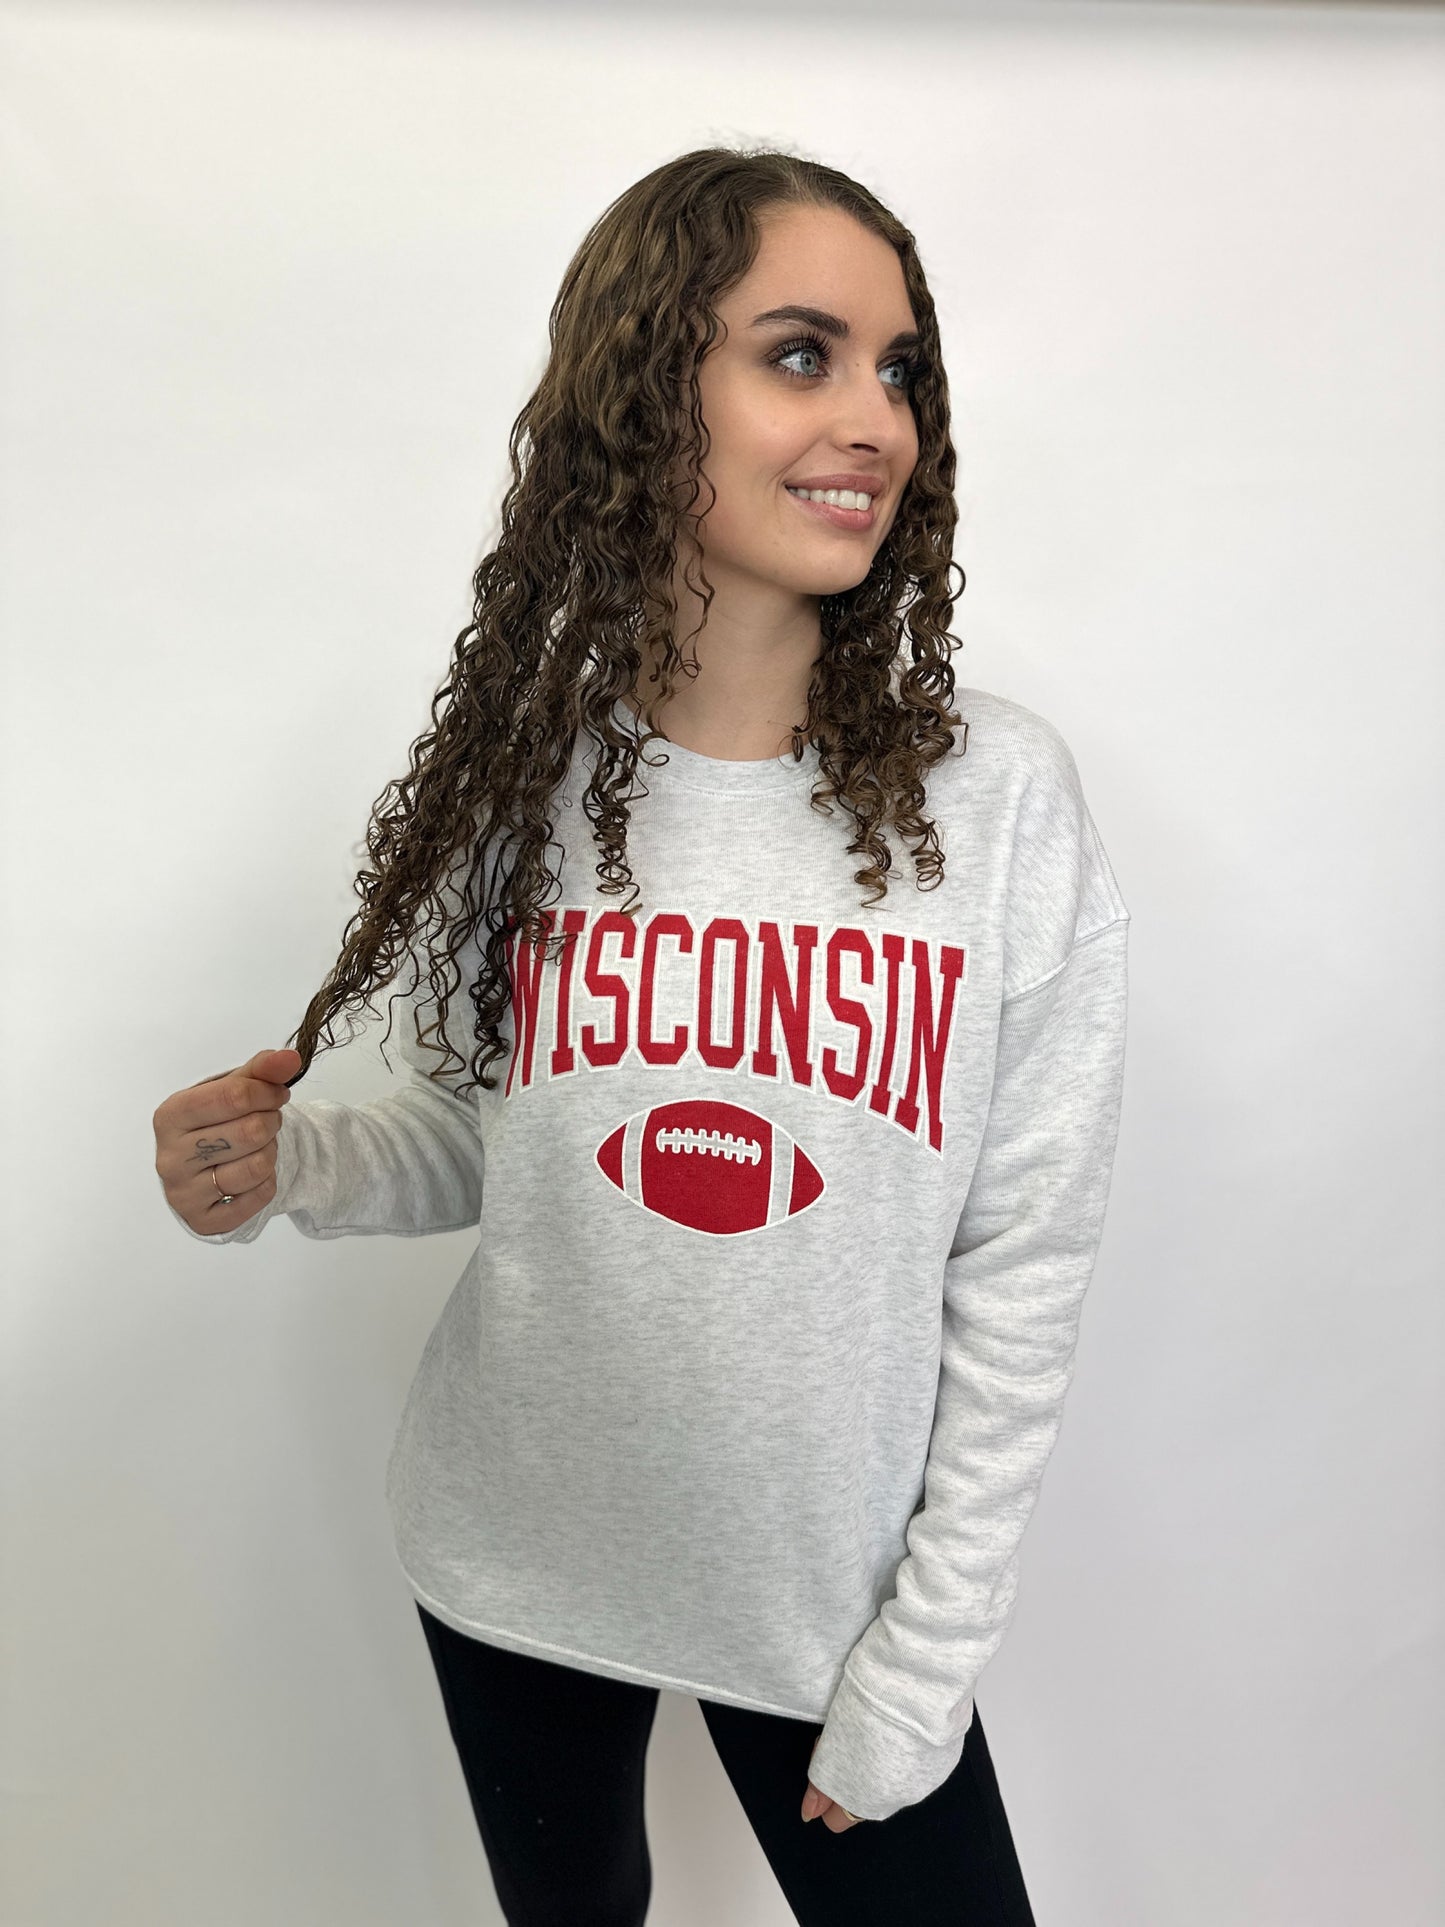 Wisconsin Sweatshirt - 6 Colors